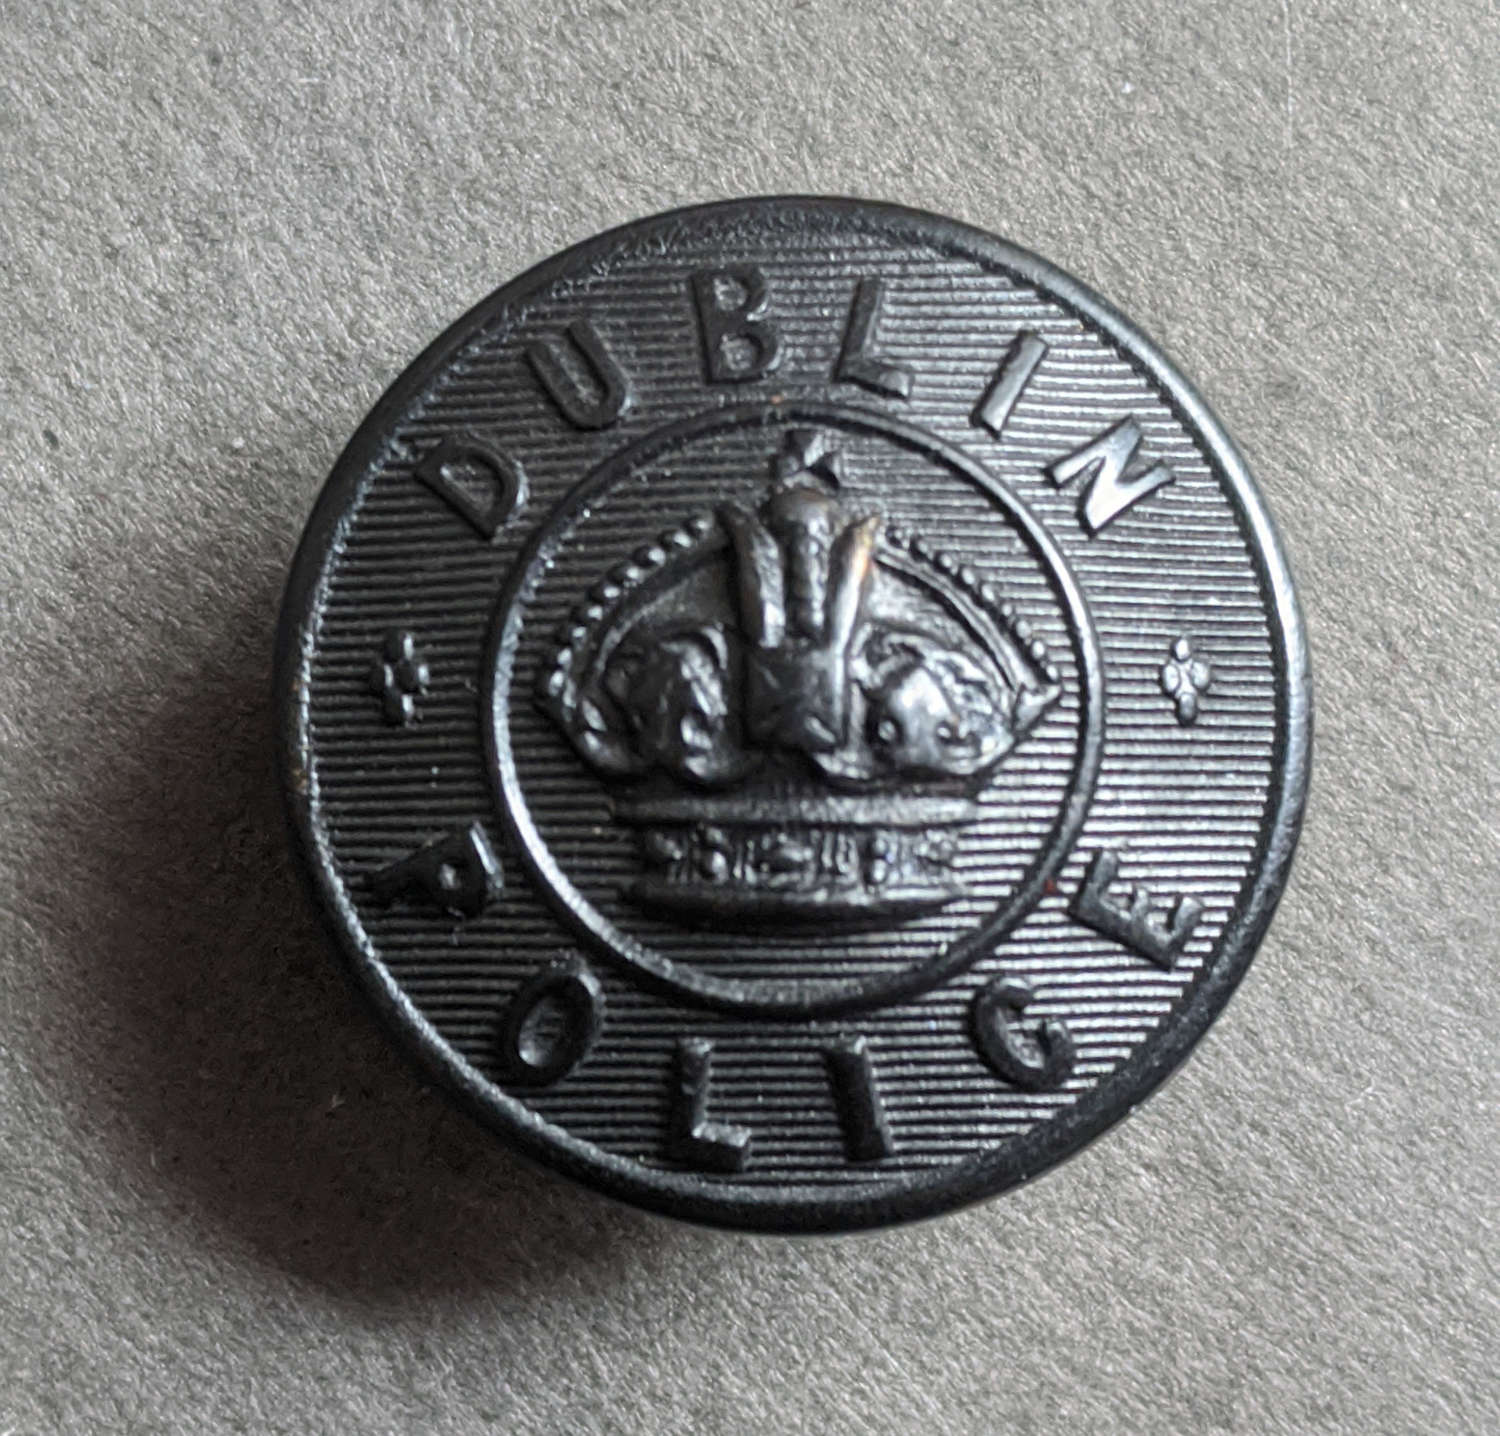 Rare 25mm Edwardian Dublin Metropolitan Police Black Horn Button